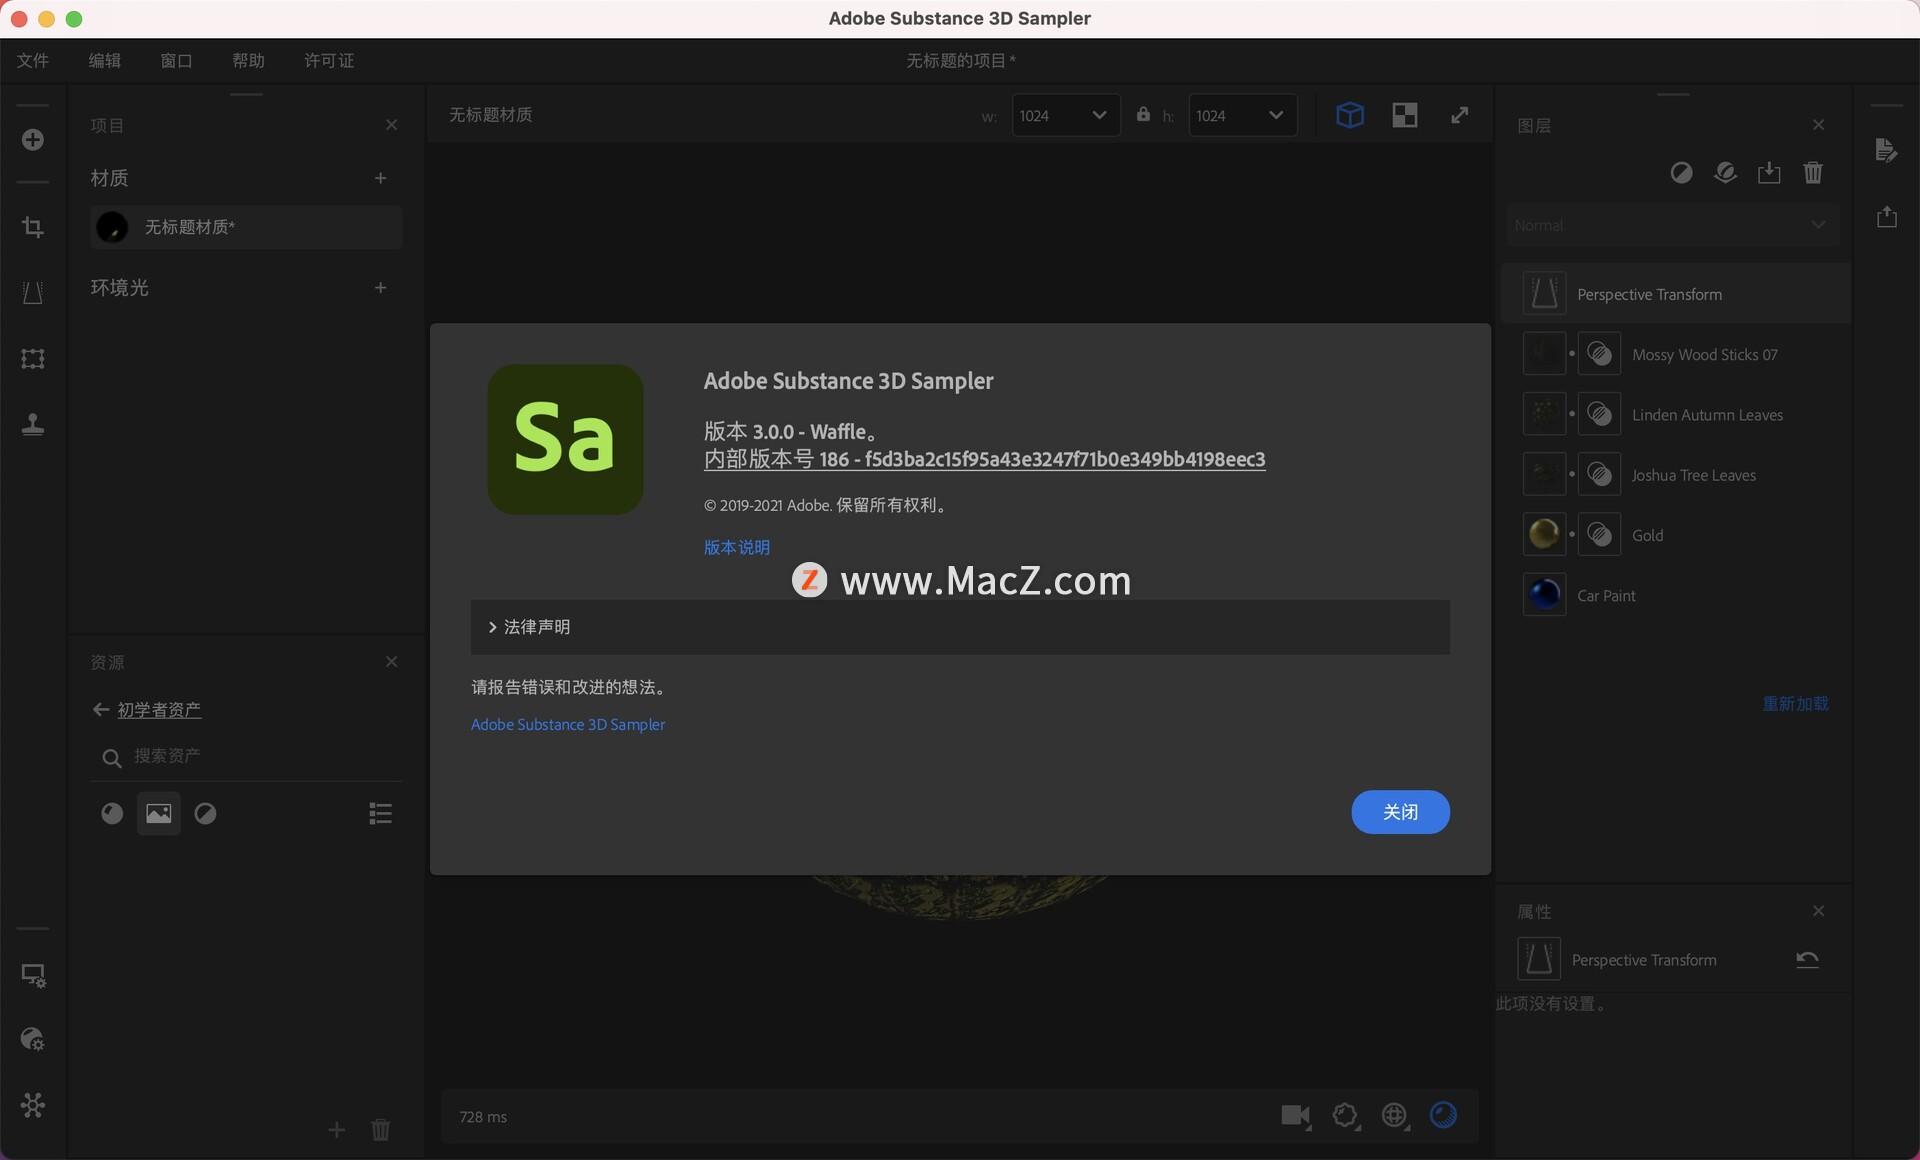 Adobe Substance 3D Sampler 4.1.2.3298 for mac download